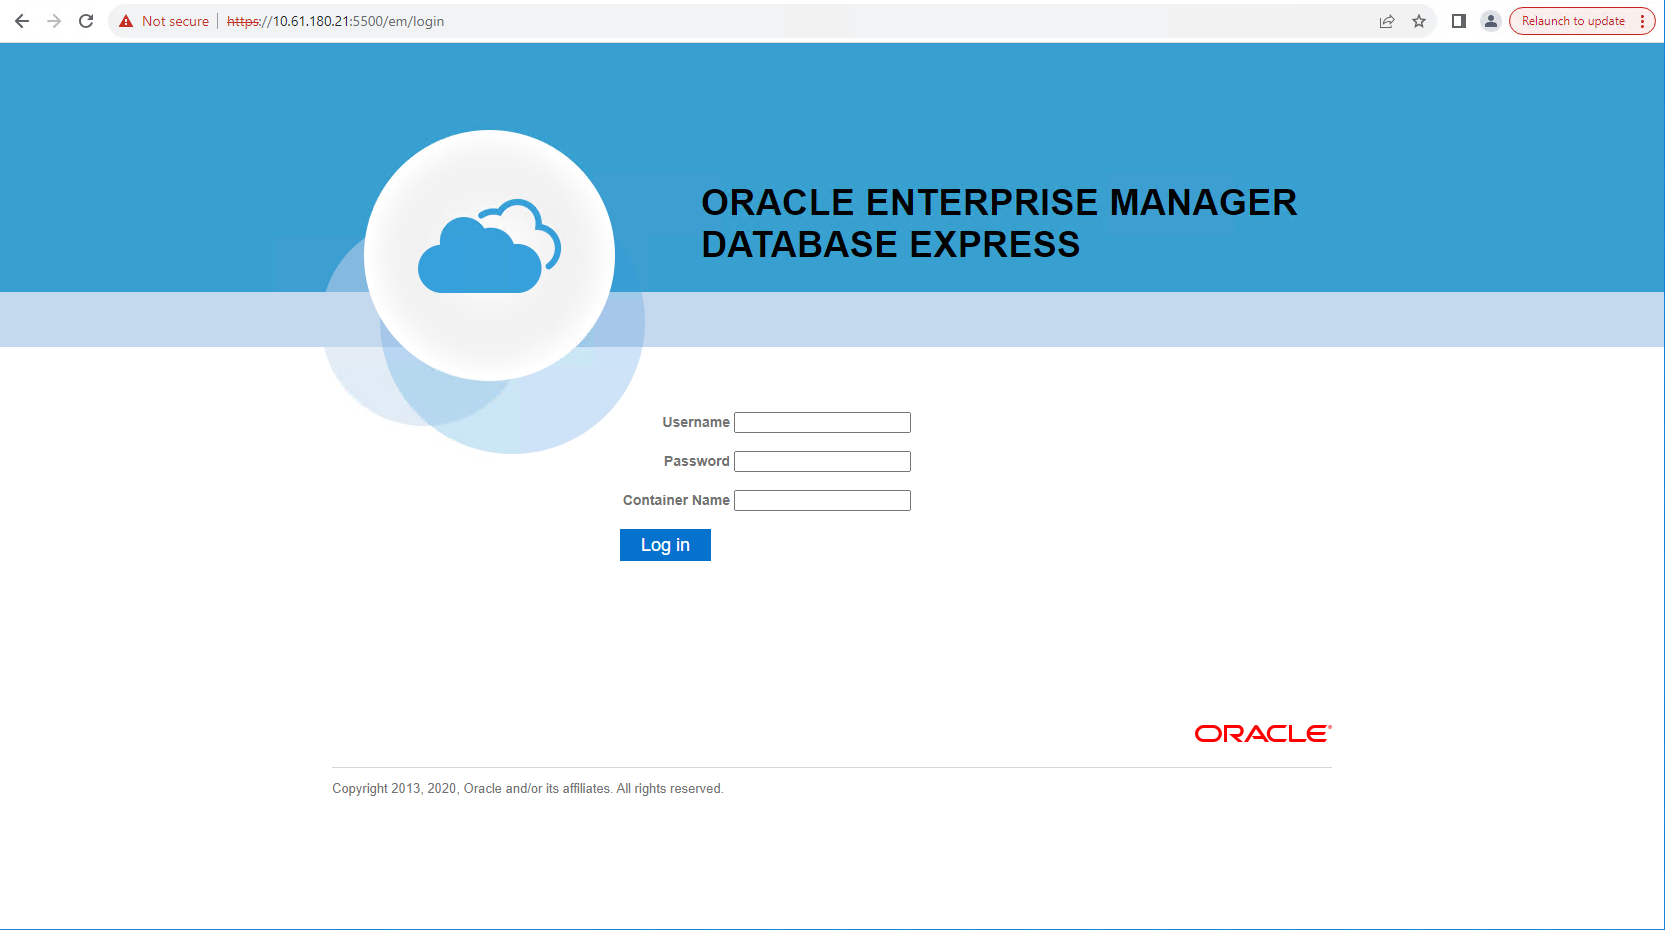 Questa immagine fornisce la schermata di accesso per Oracle Enterprise Manager Express